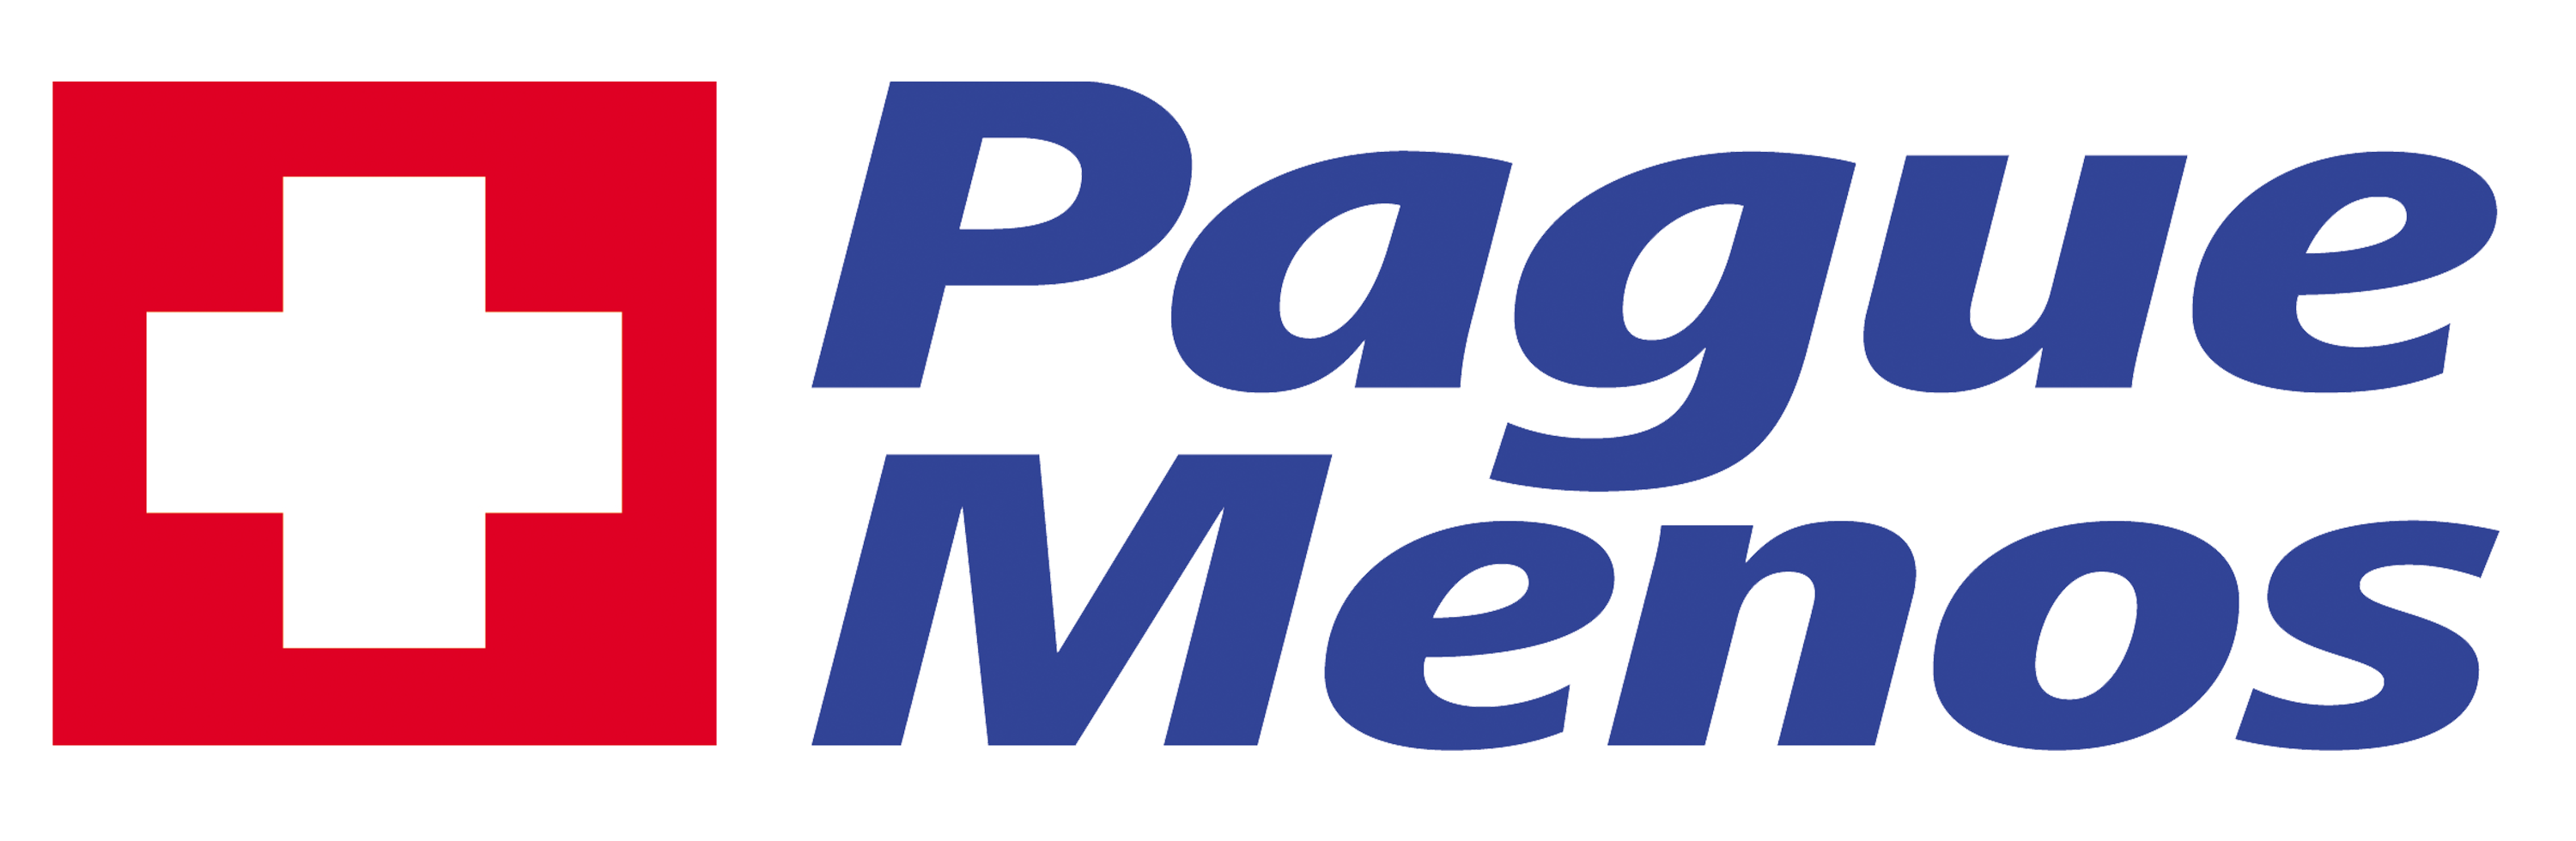 Farmacia Pague Menos - Marco - PA